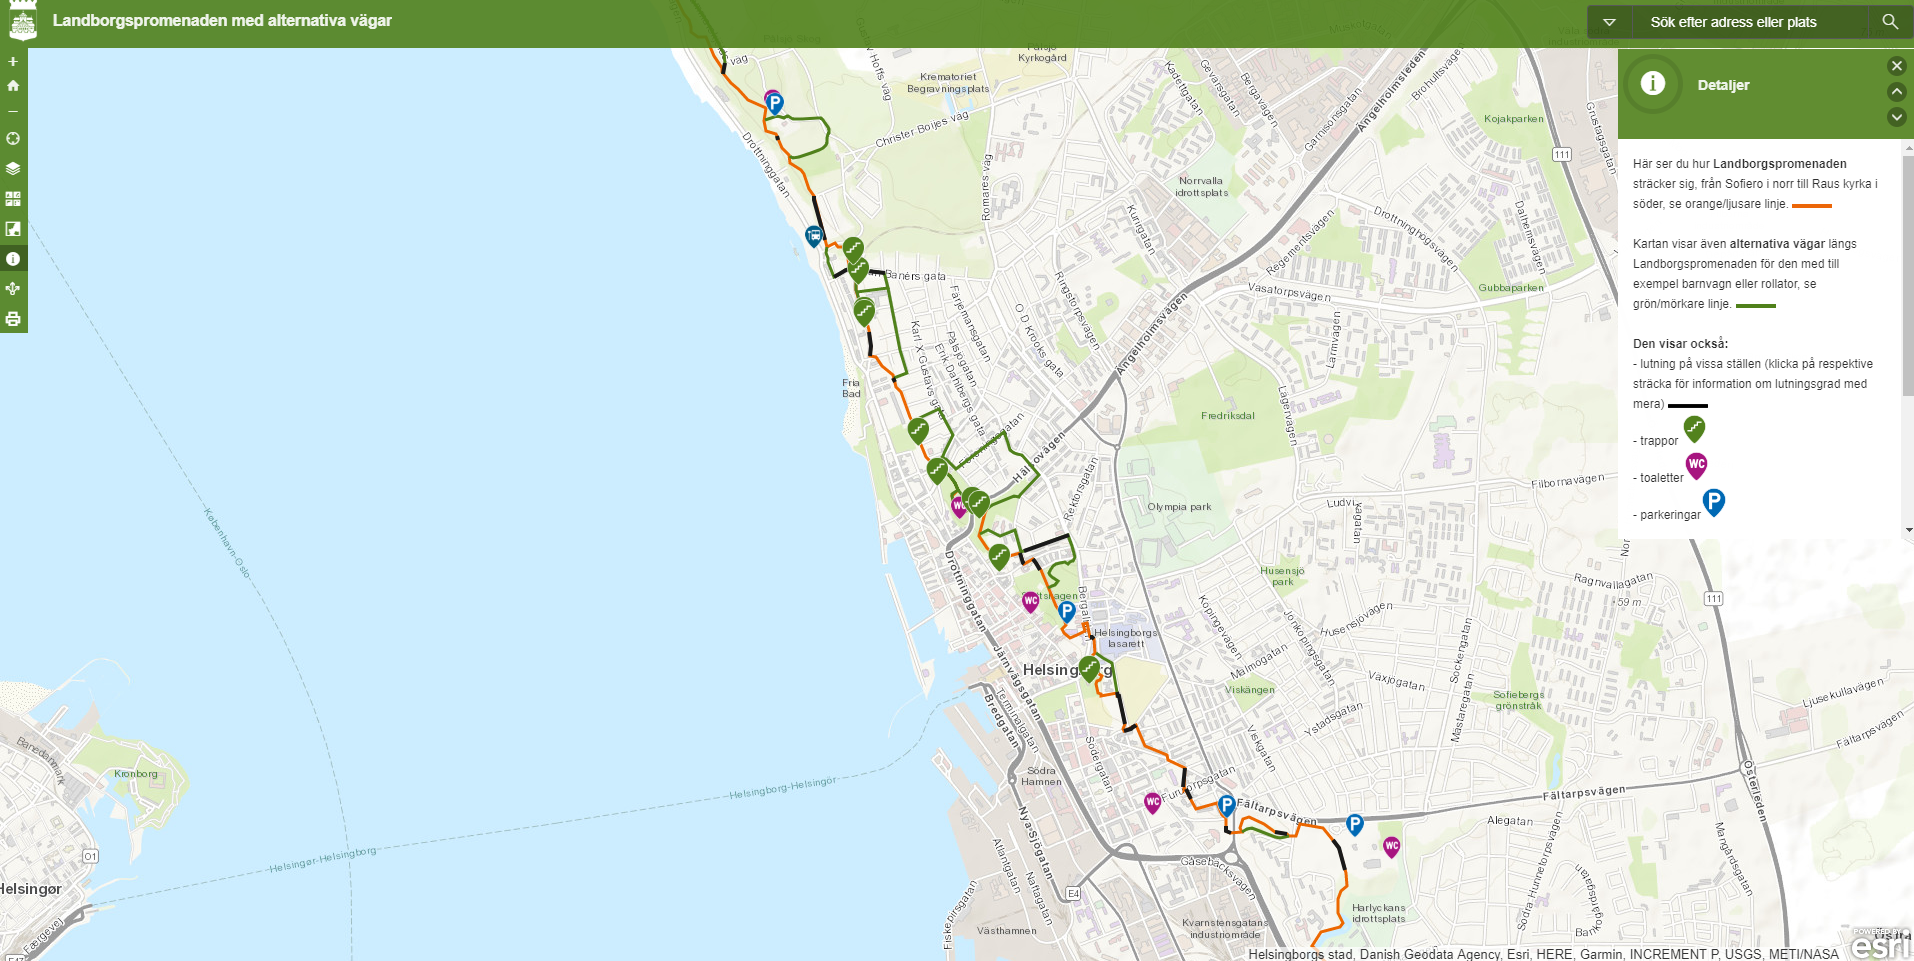 Skärmklipp av karta över Landborgspromenaden, med information om alternativa vägar, branta sträckor, trappor med mera